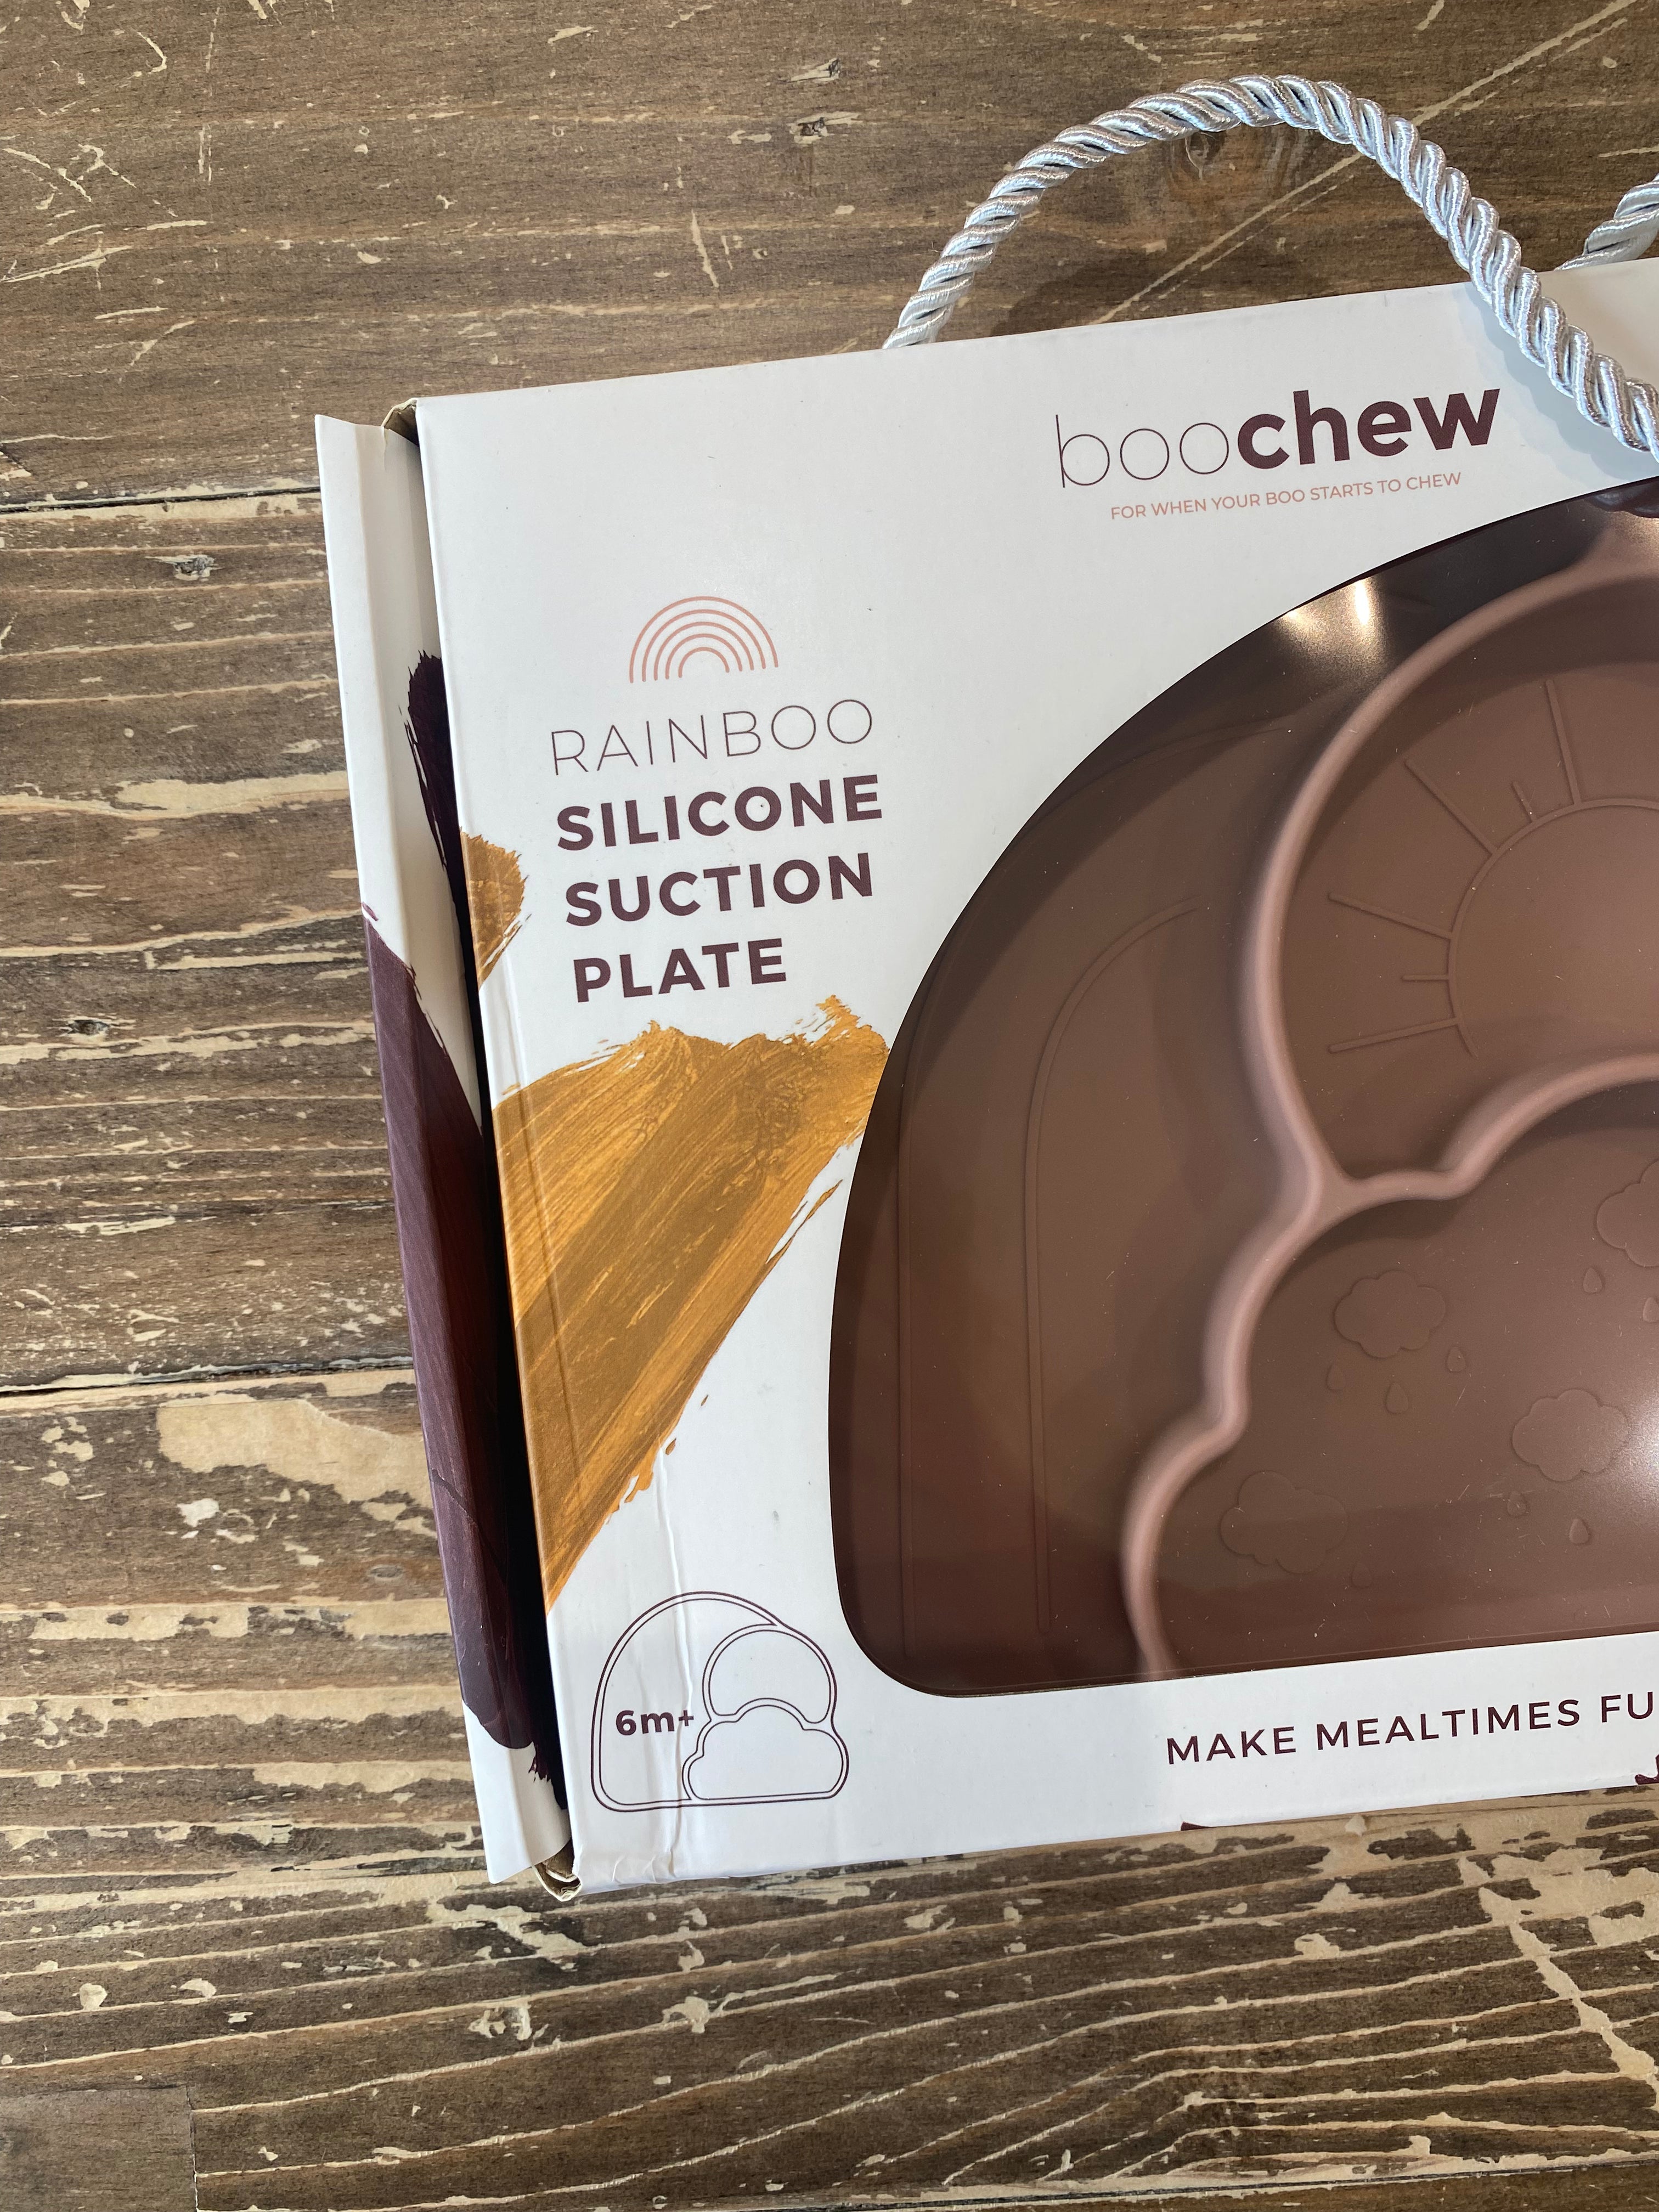 Sample Sale <br> Rainboo Silicone Plate Boo Chew 